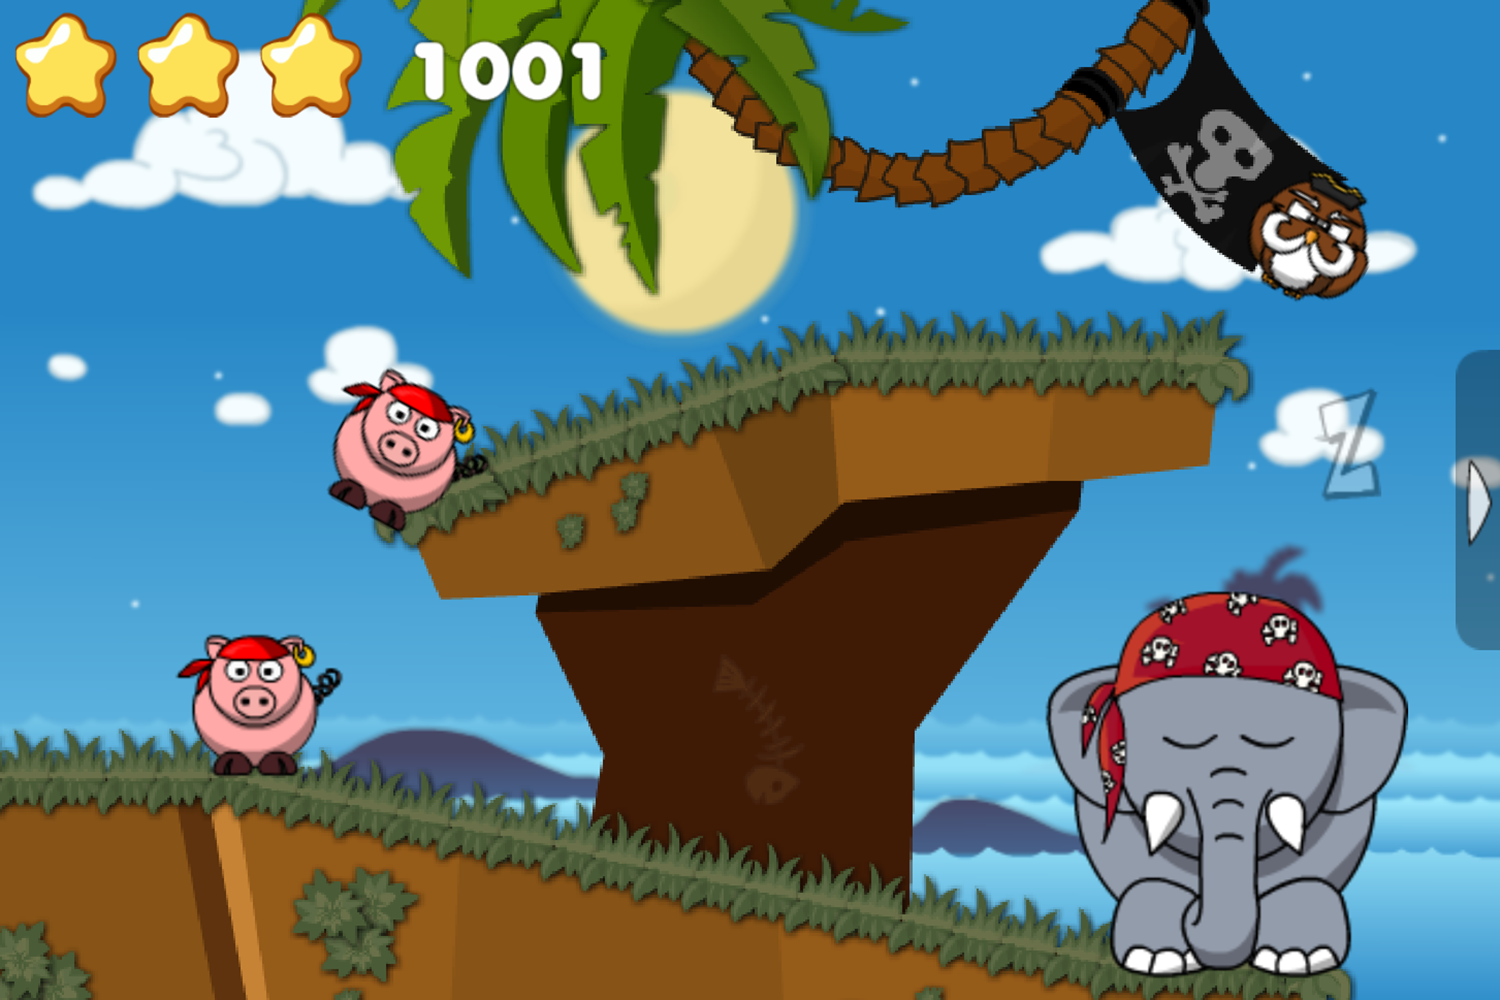 Snoring Pirates Game Play Screenshot.